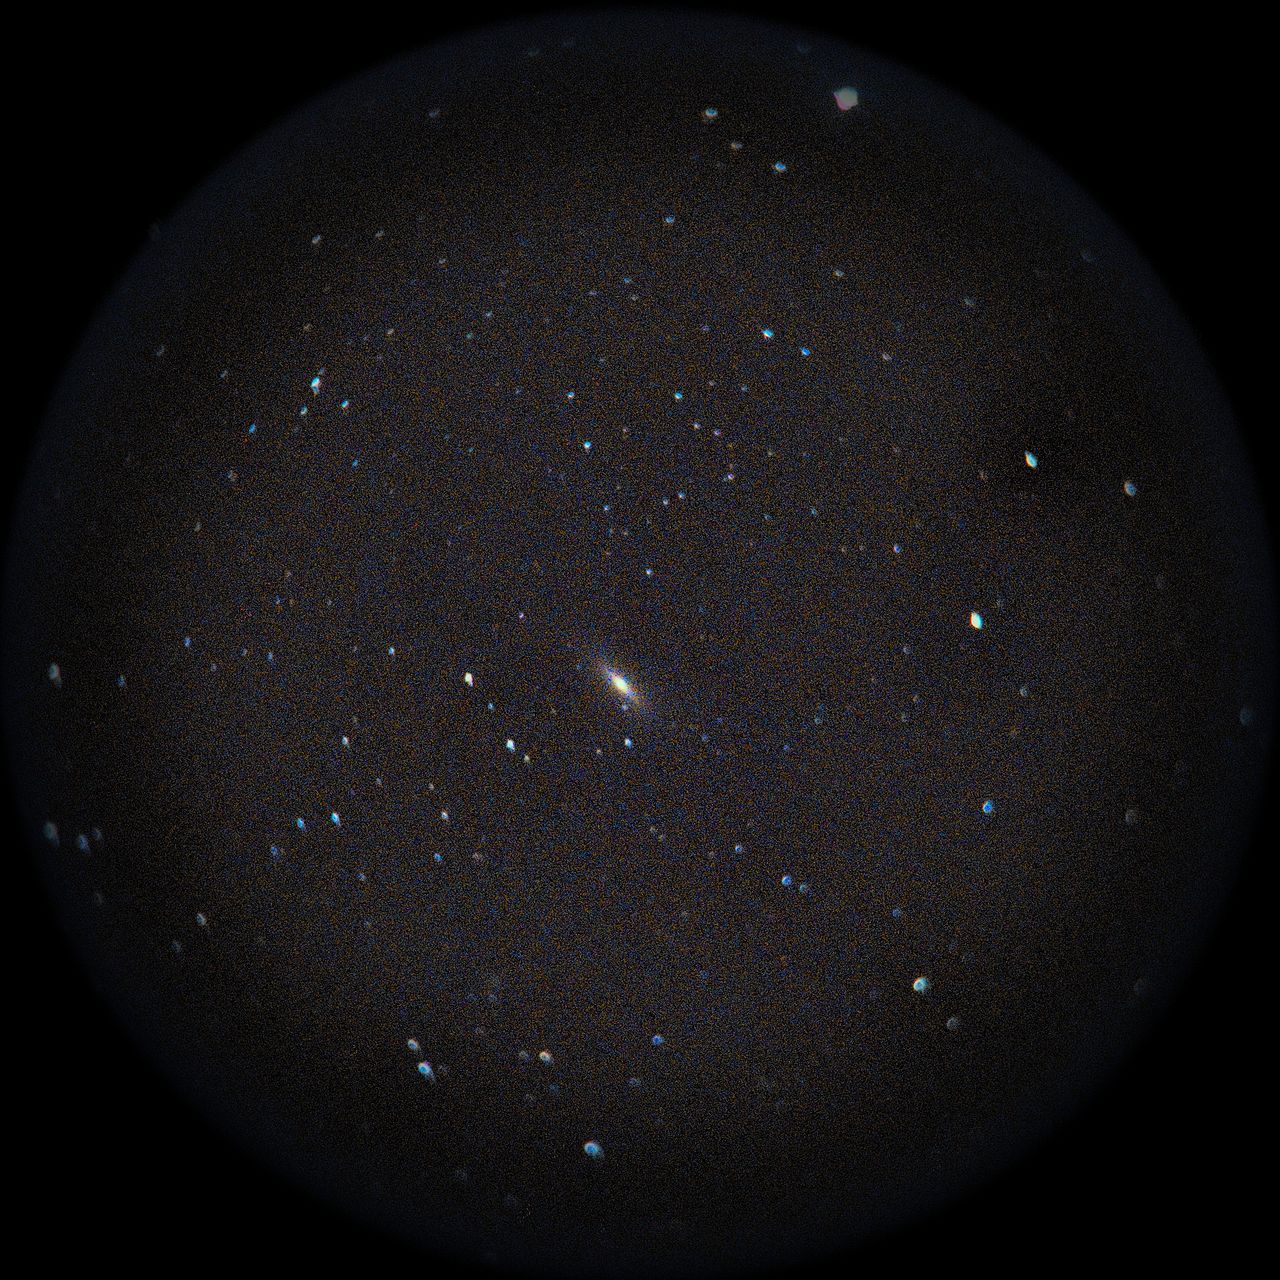 Image of NGC3115